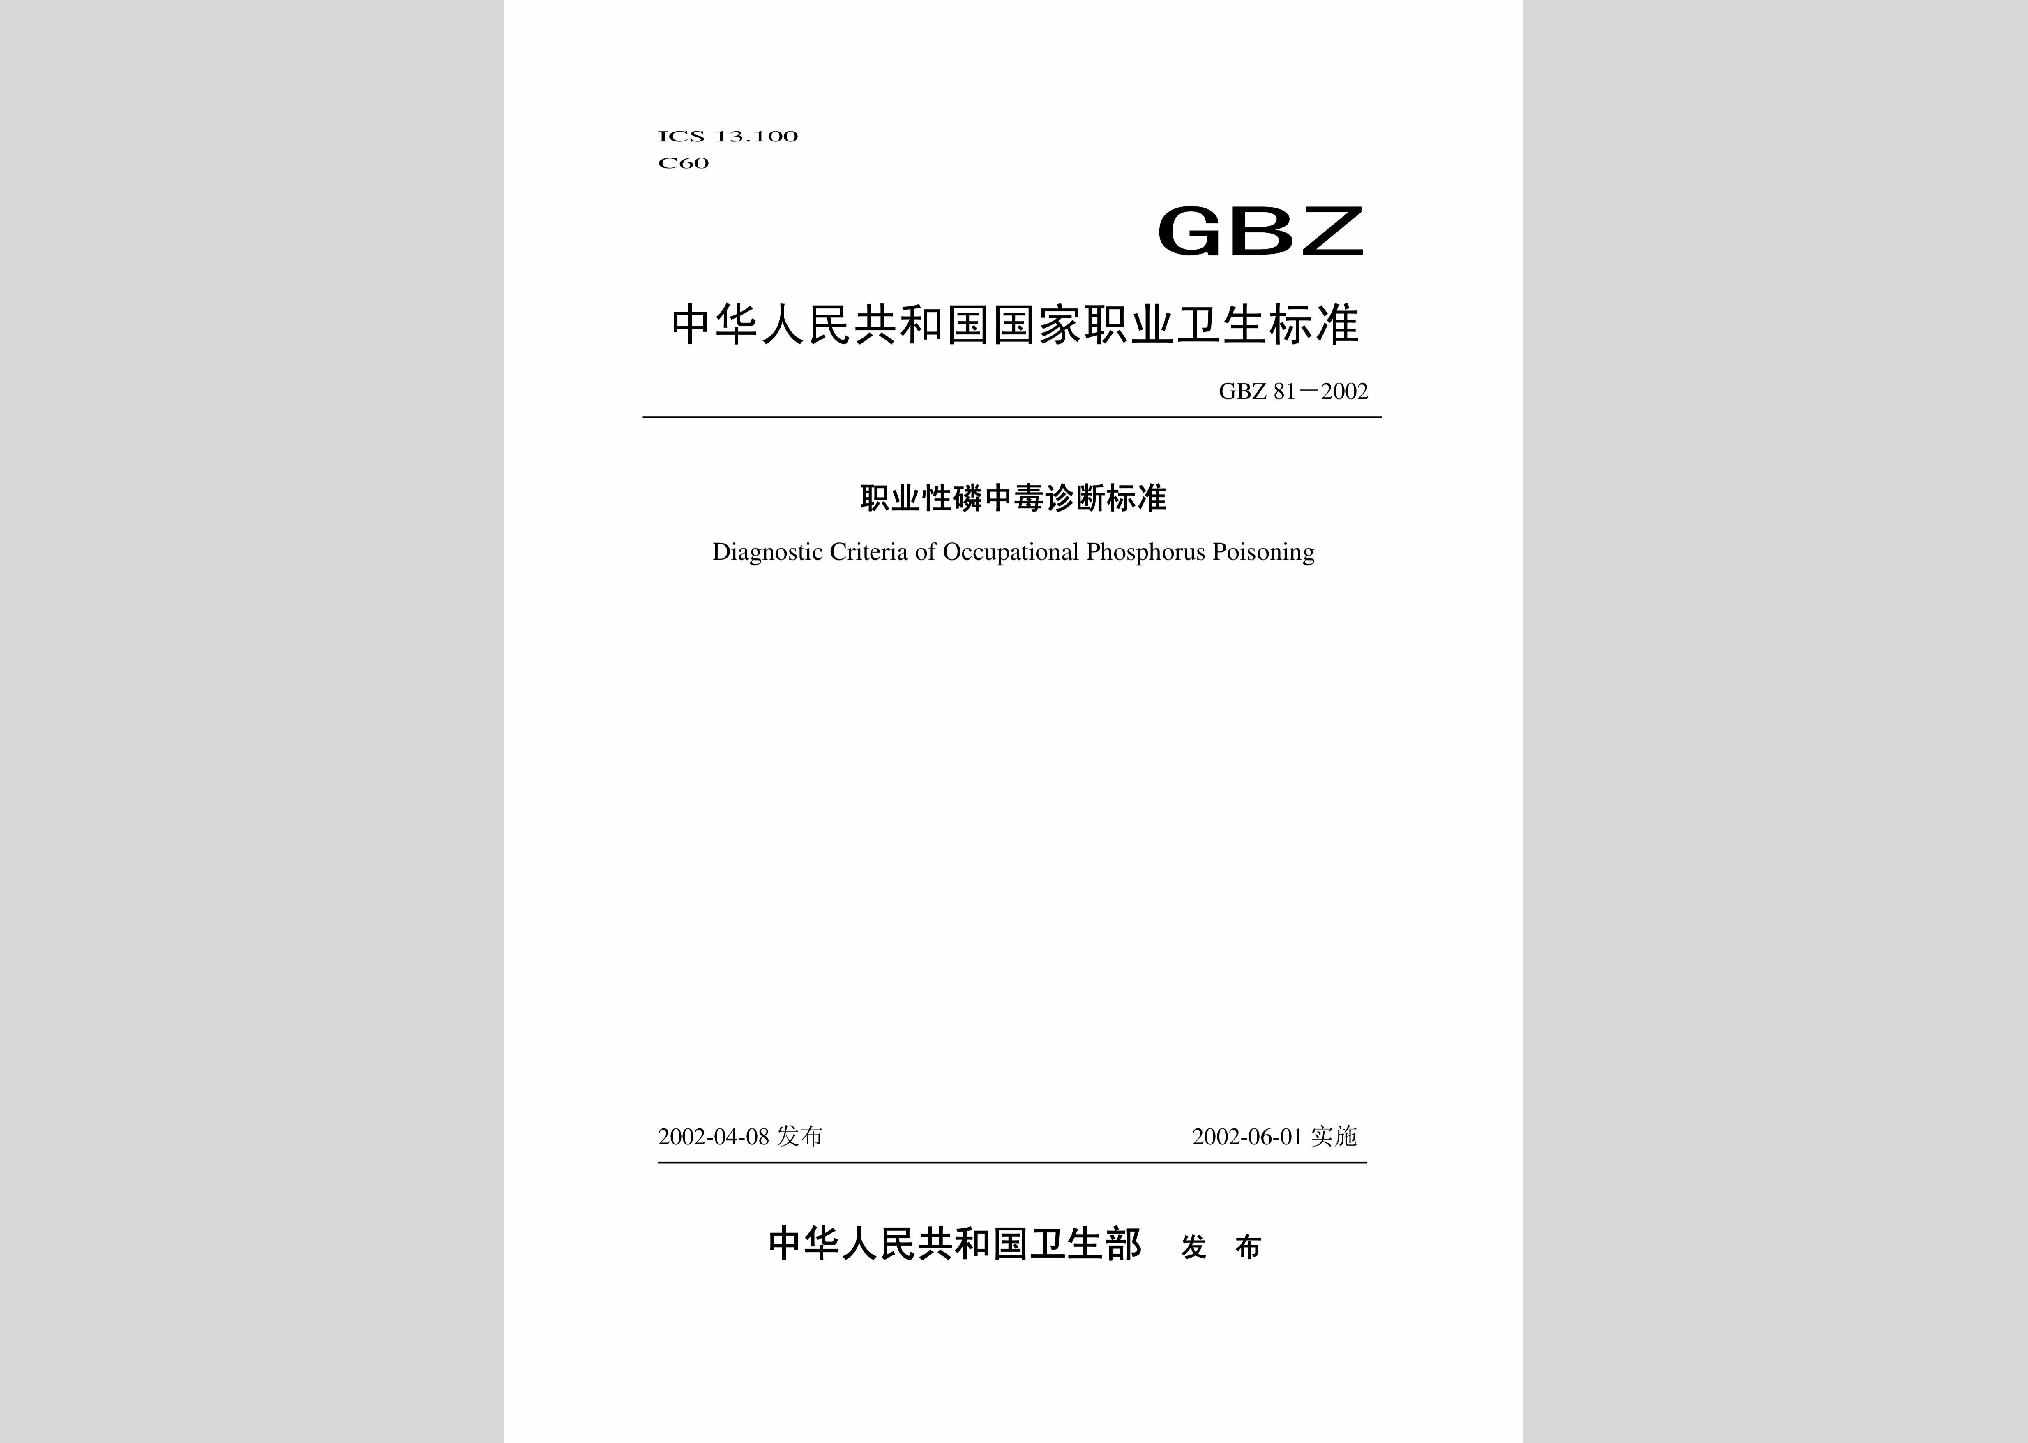 GBZ81-2002：职业性磷中毒诊断标准